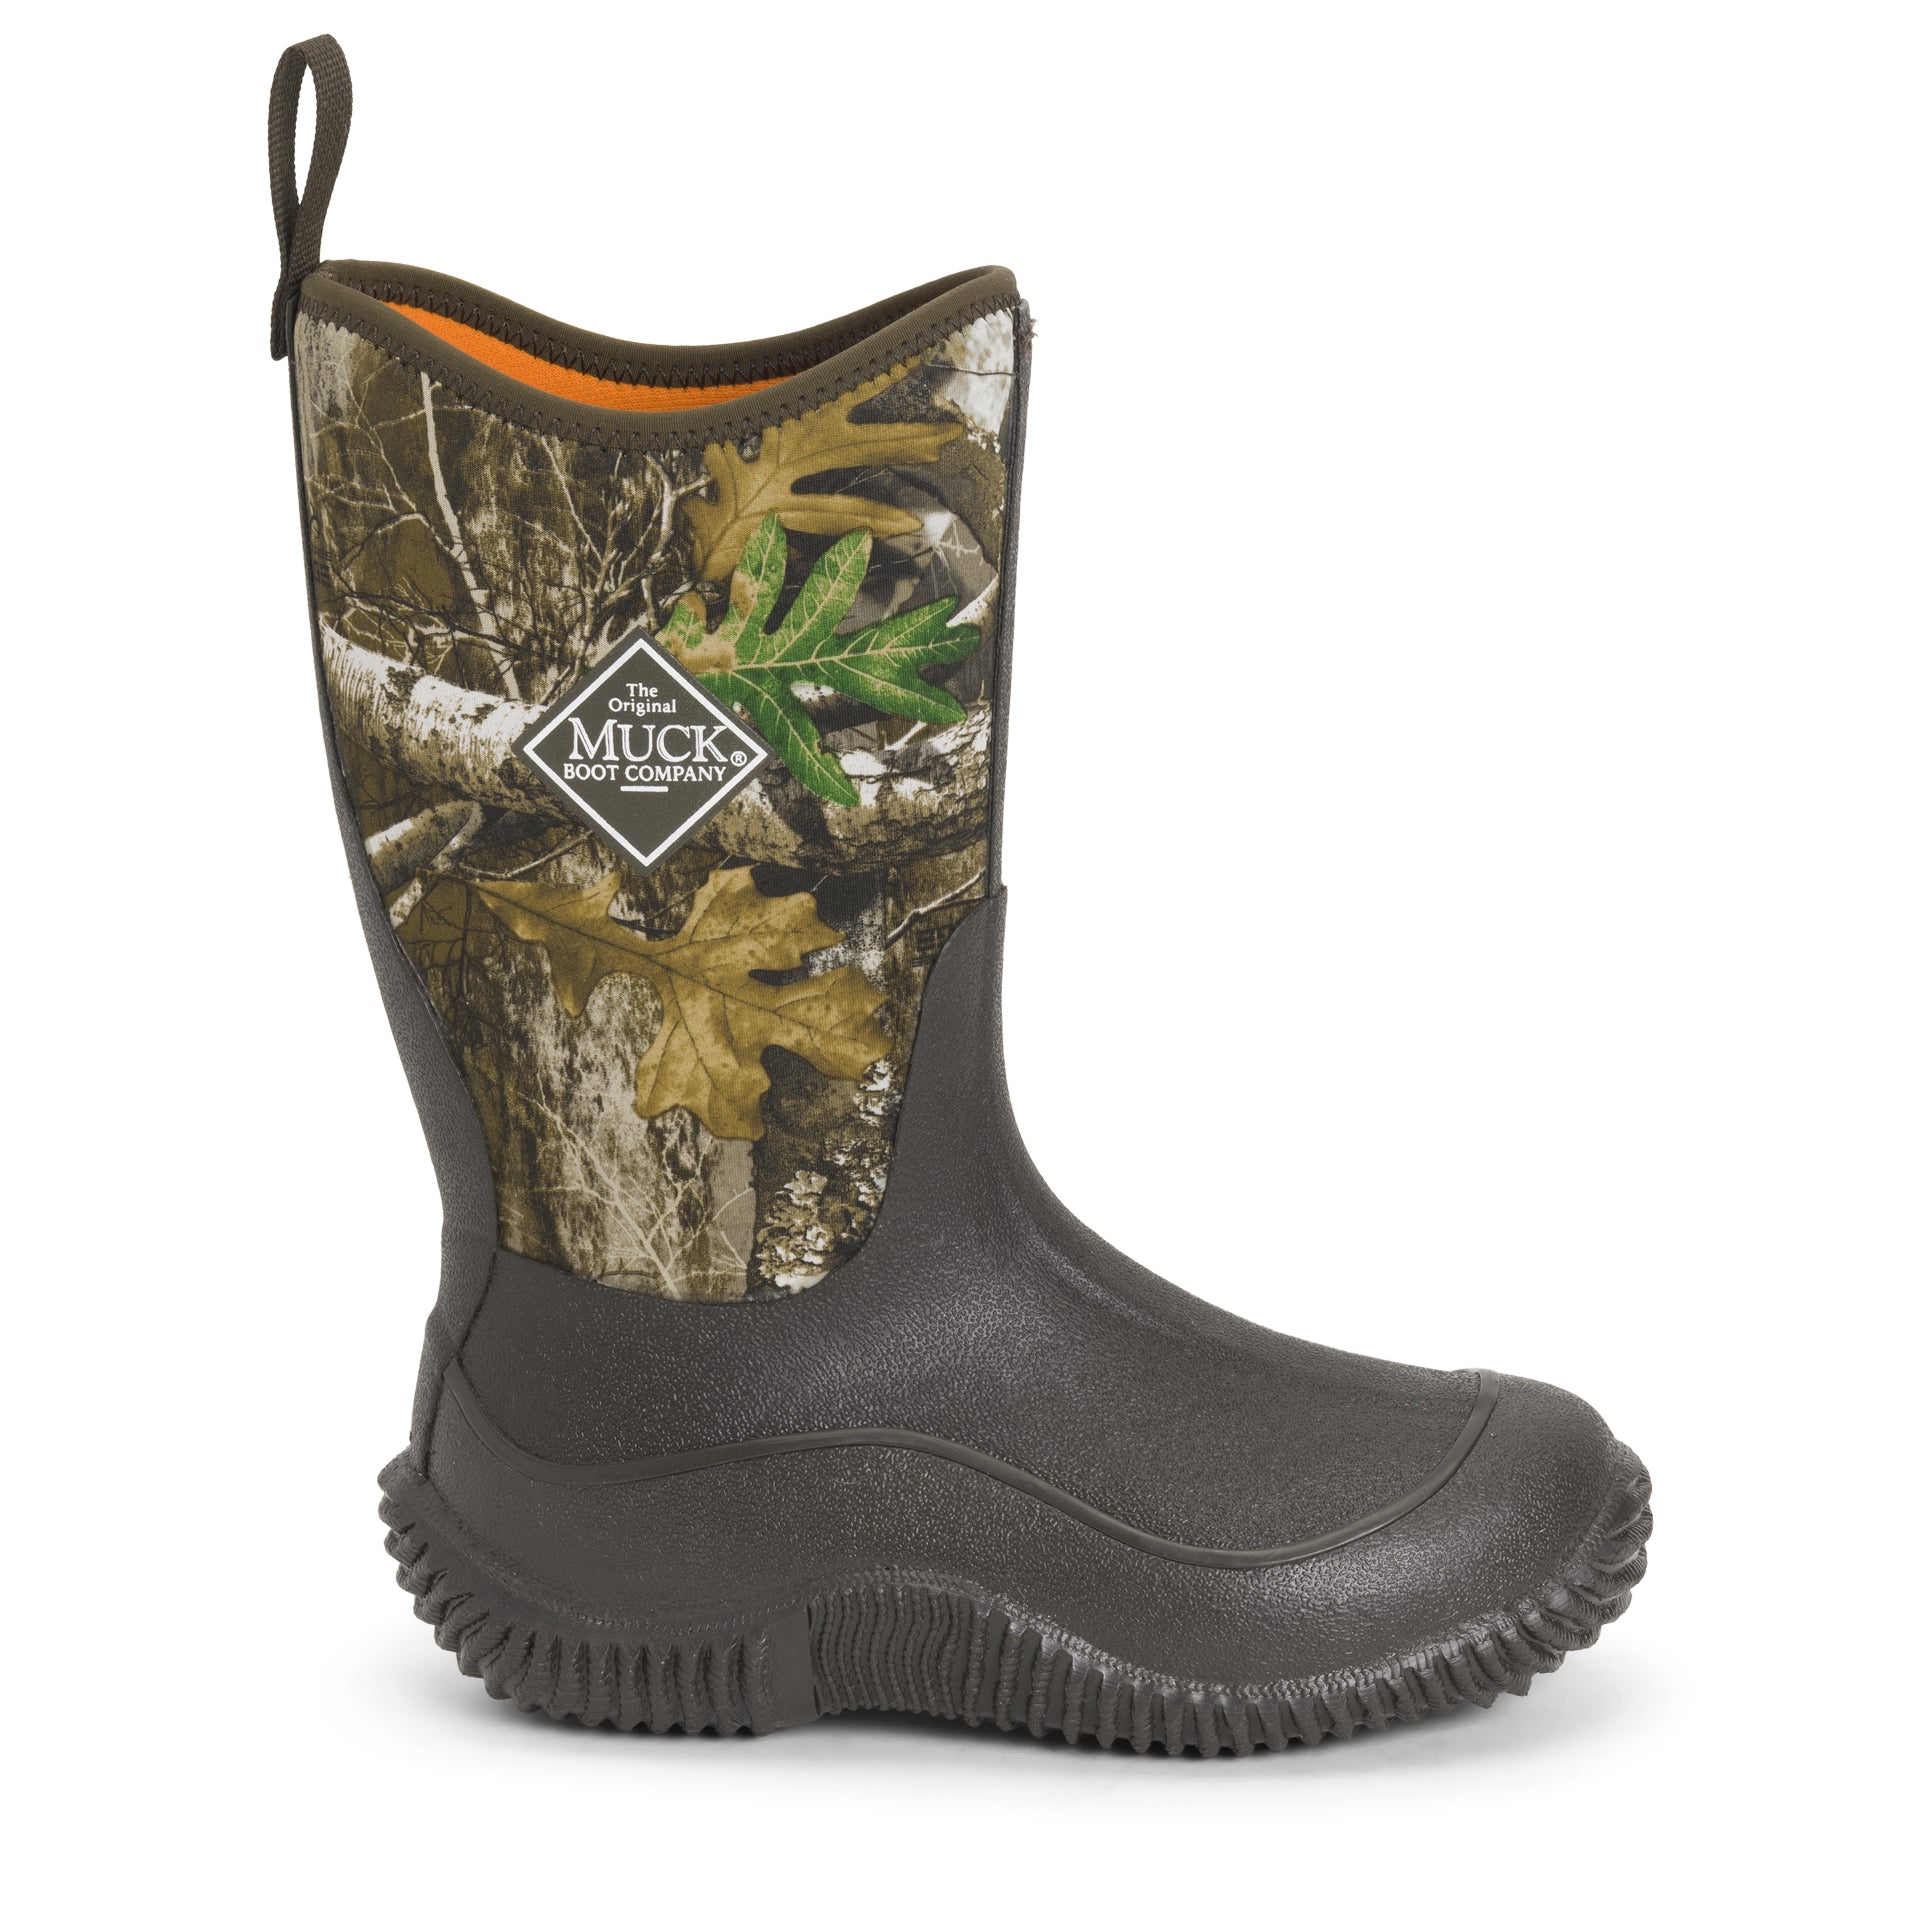 realtree edge camo field boots